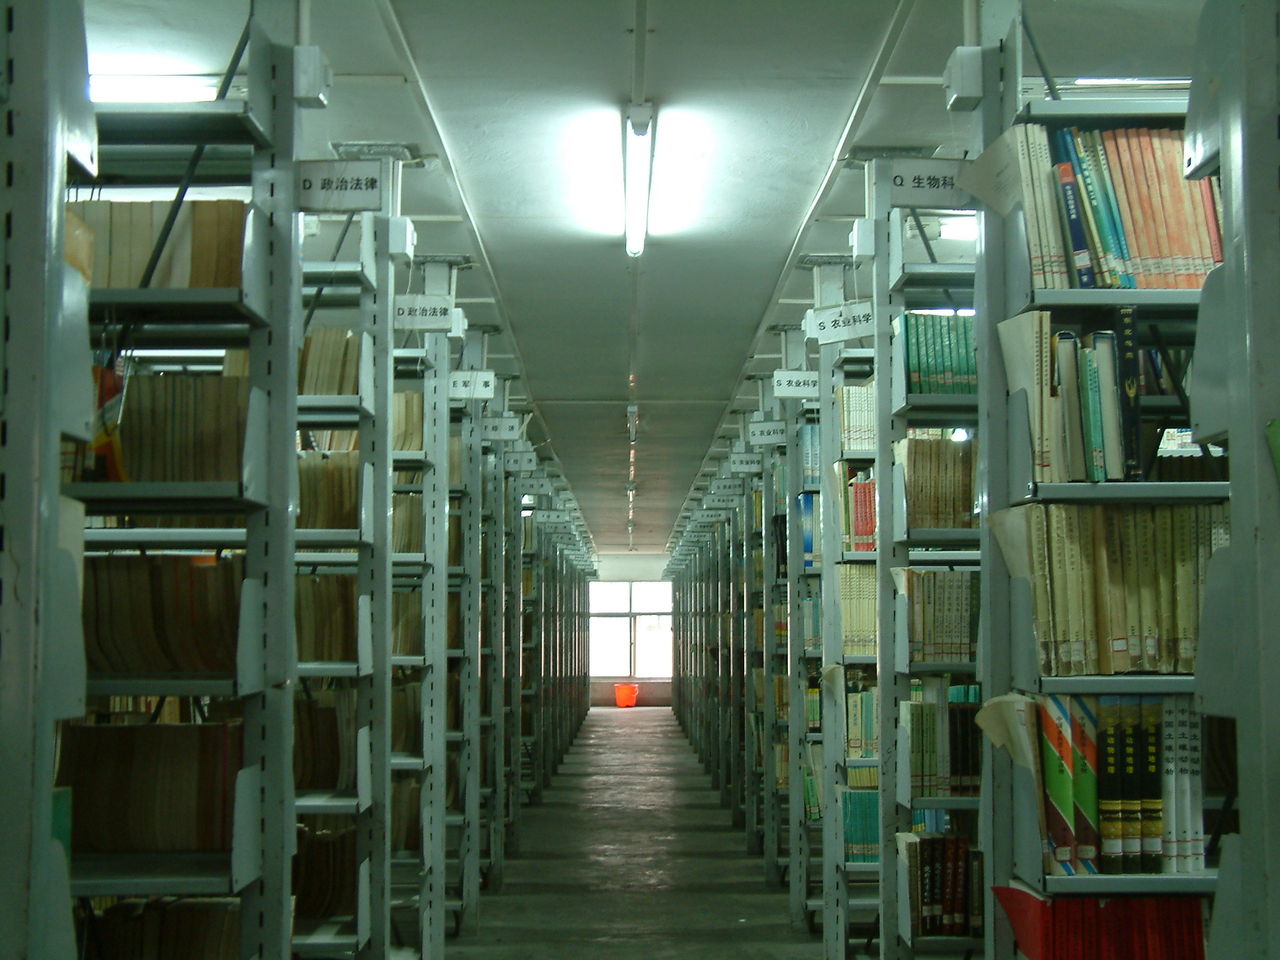 河南農業大學圖書館